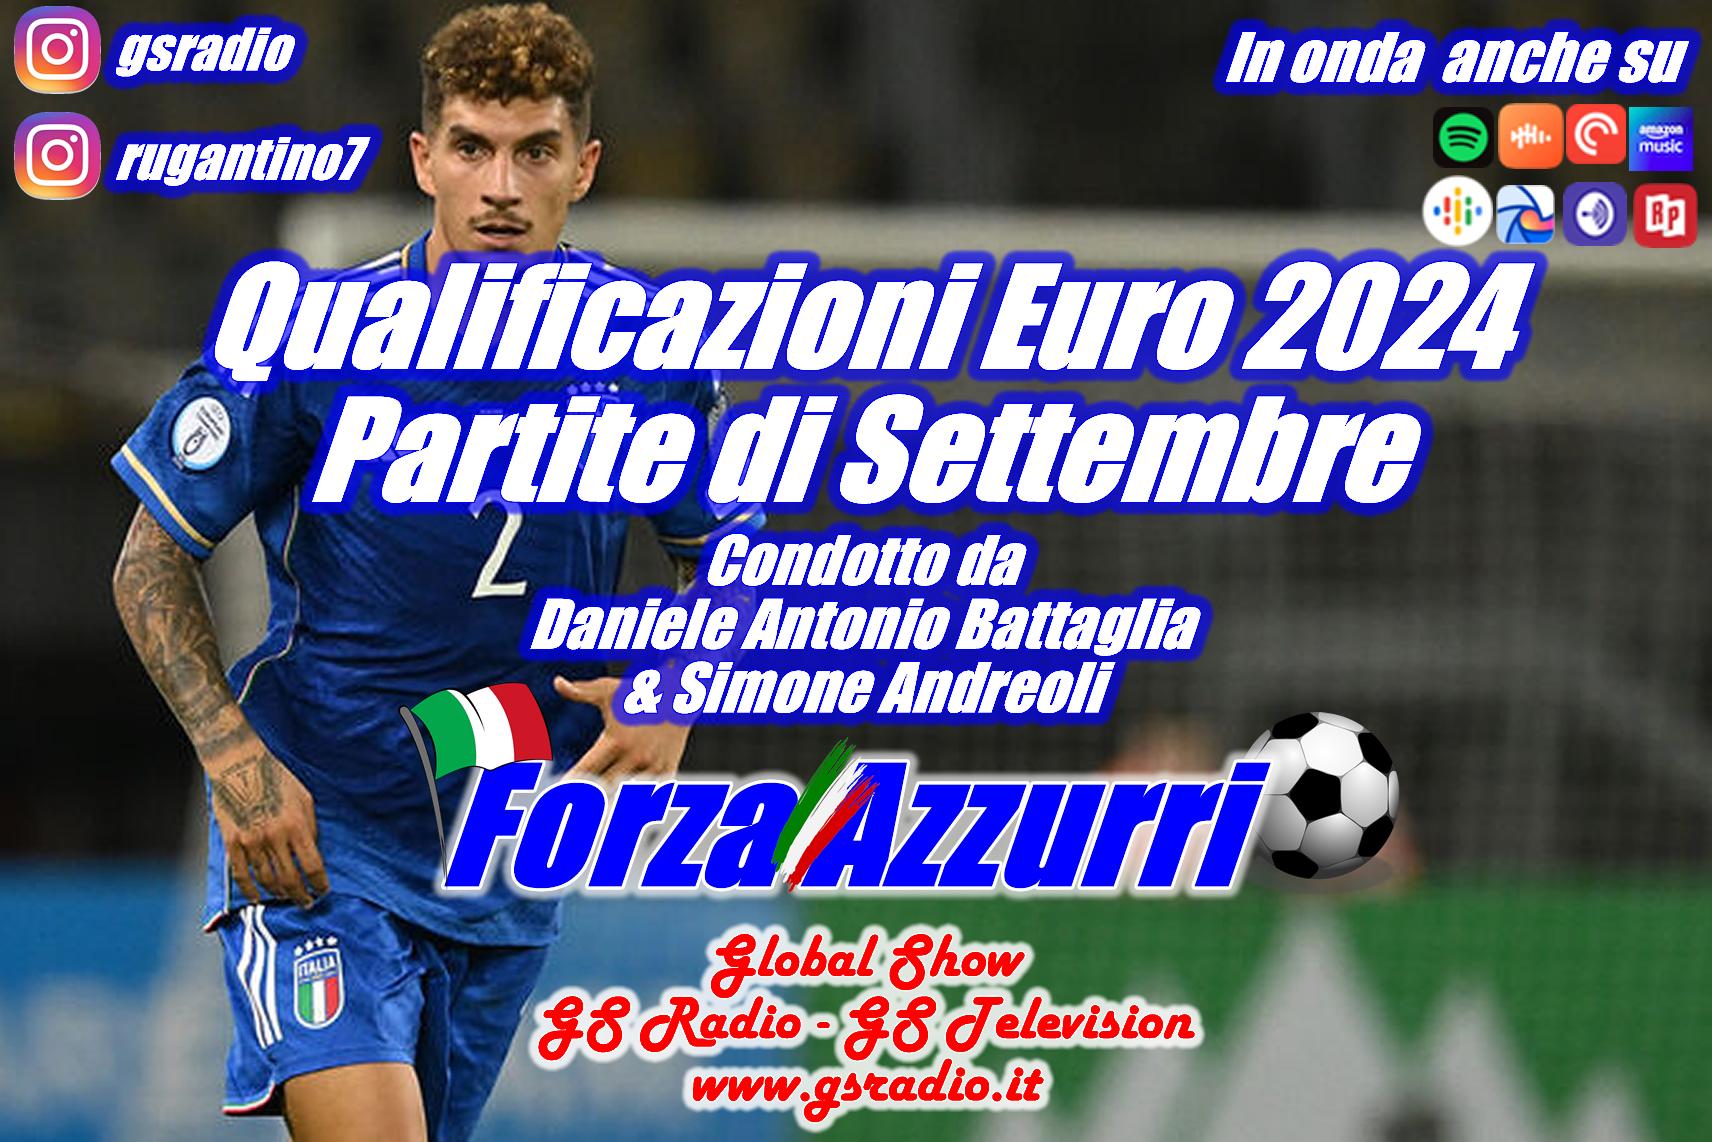 6 - Qualificazioni Euro 2024 Le Partite di Settembre